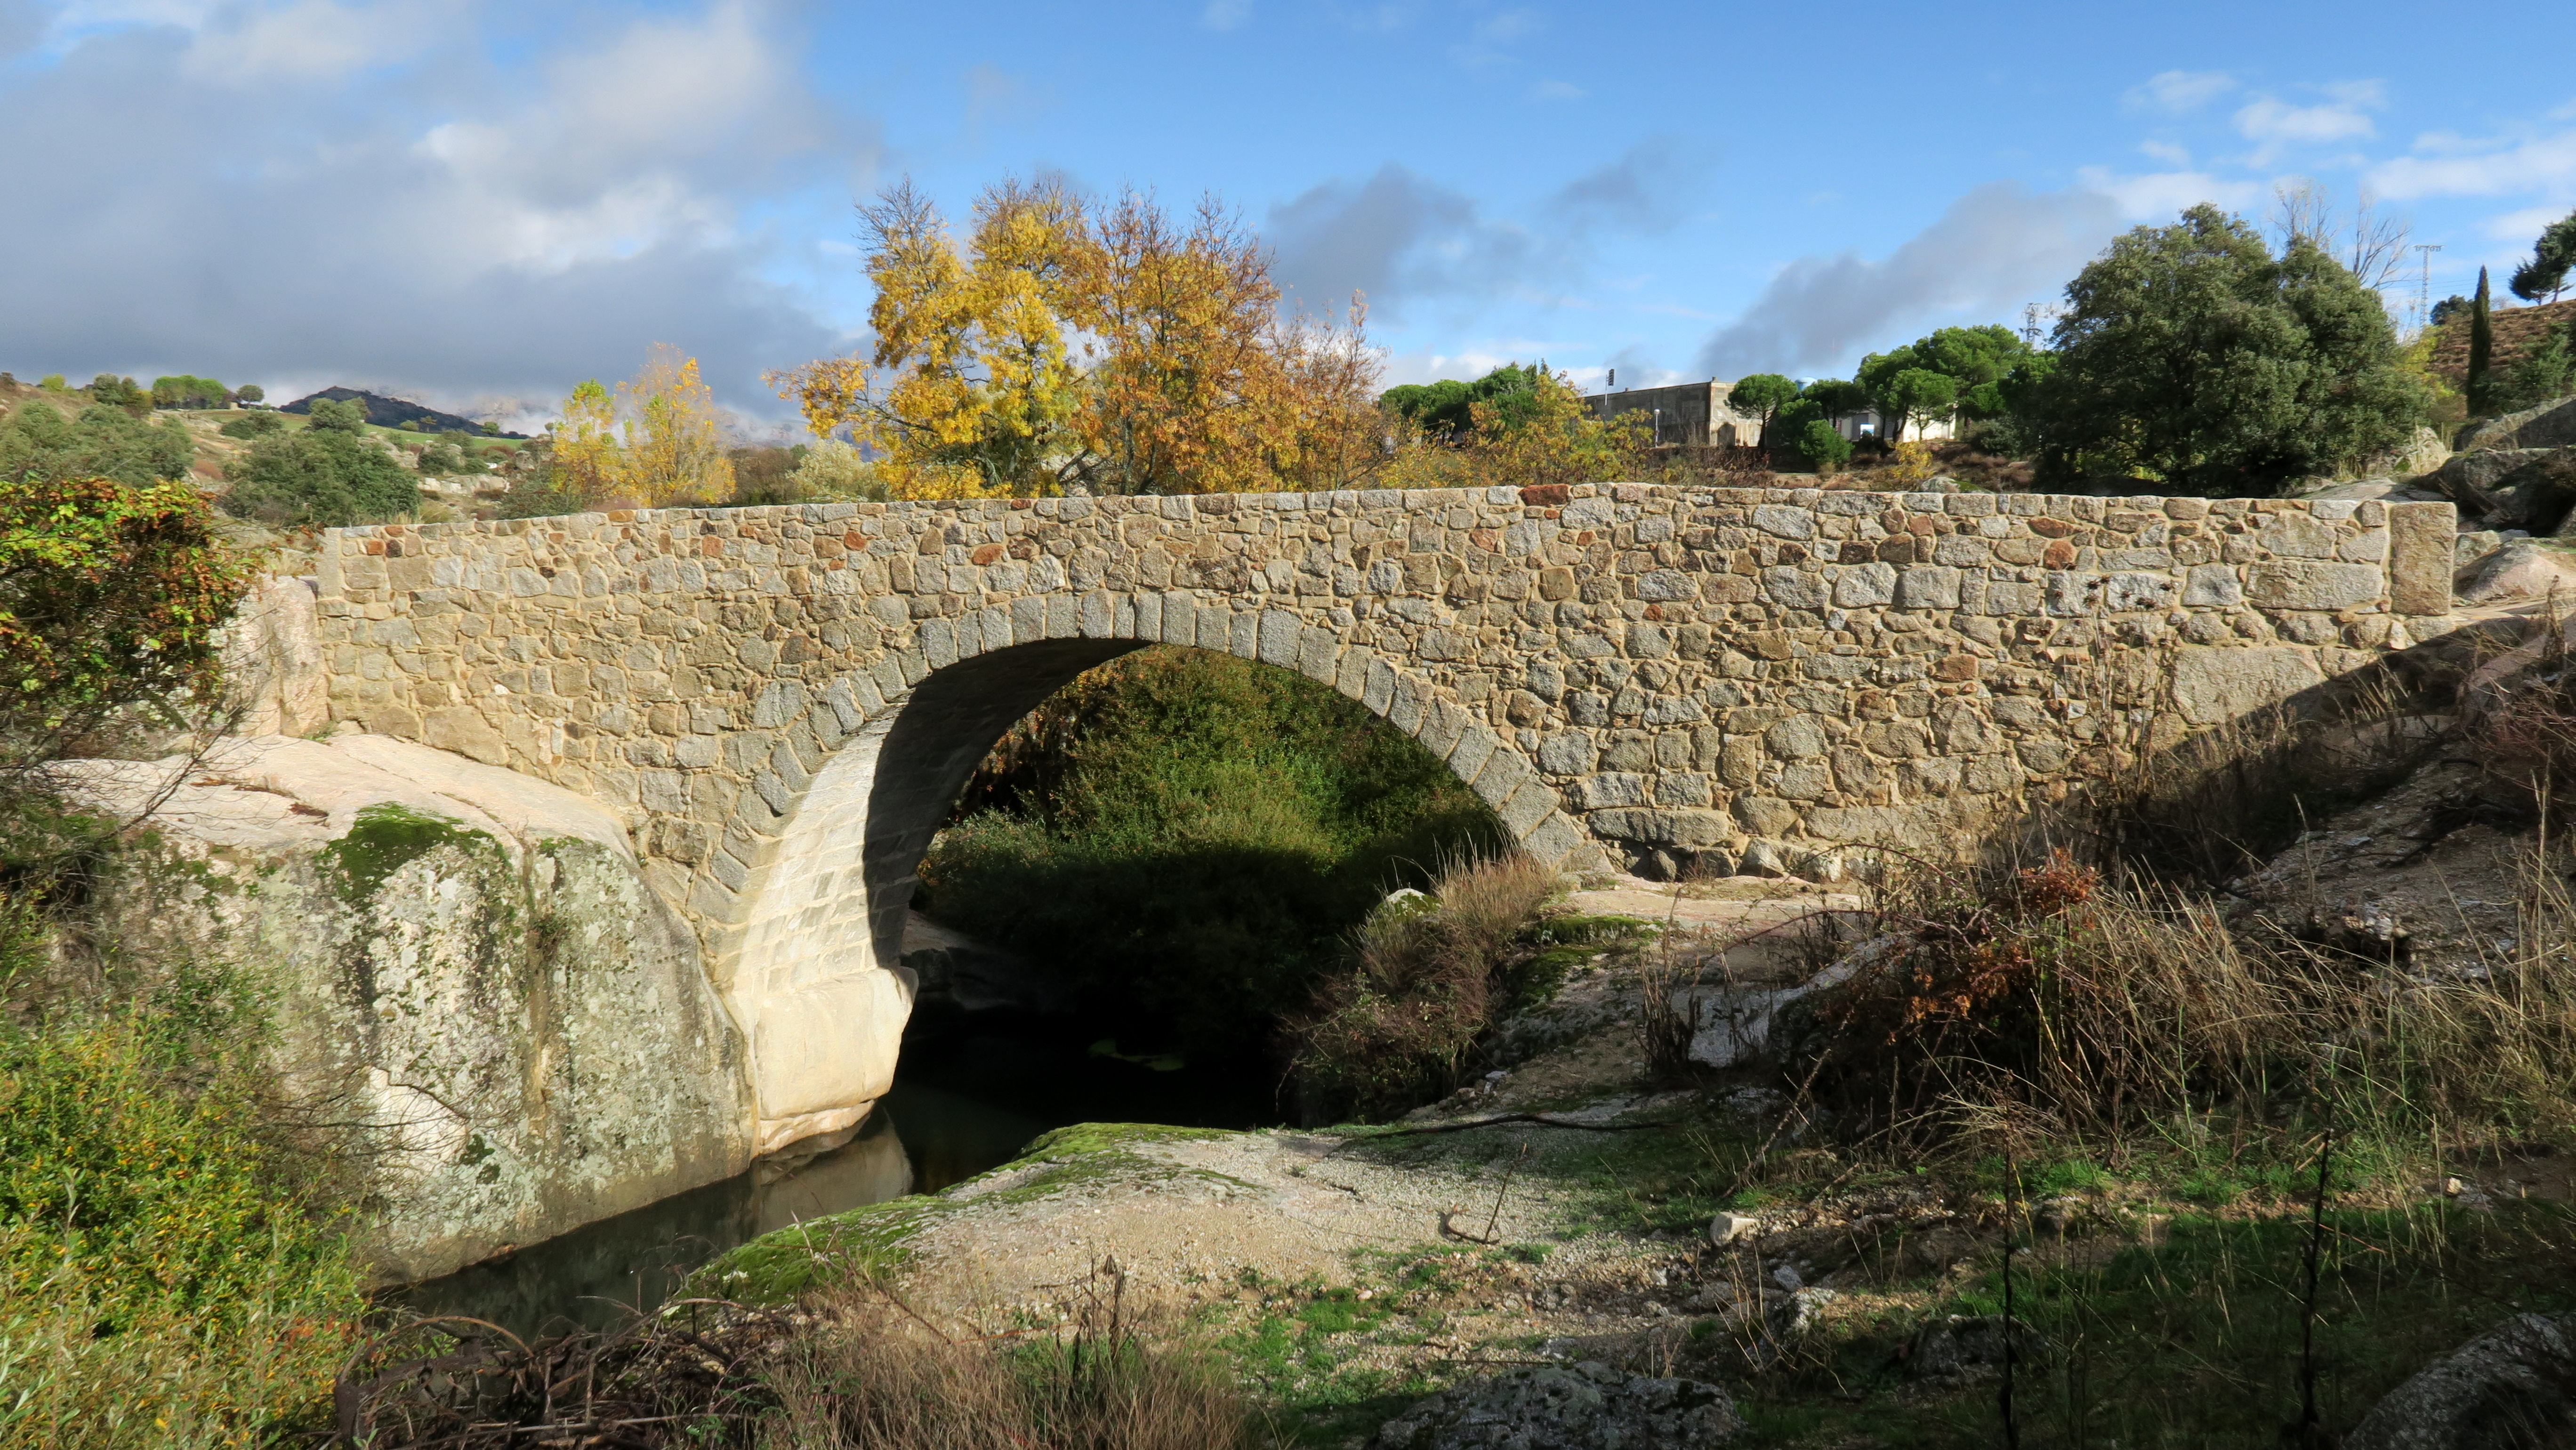 Plan de actuación sobre puentes históricos. Puente del Batán, Colmenar Viejo